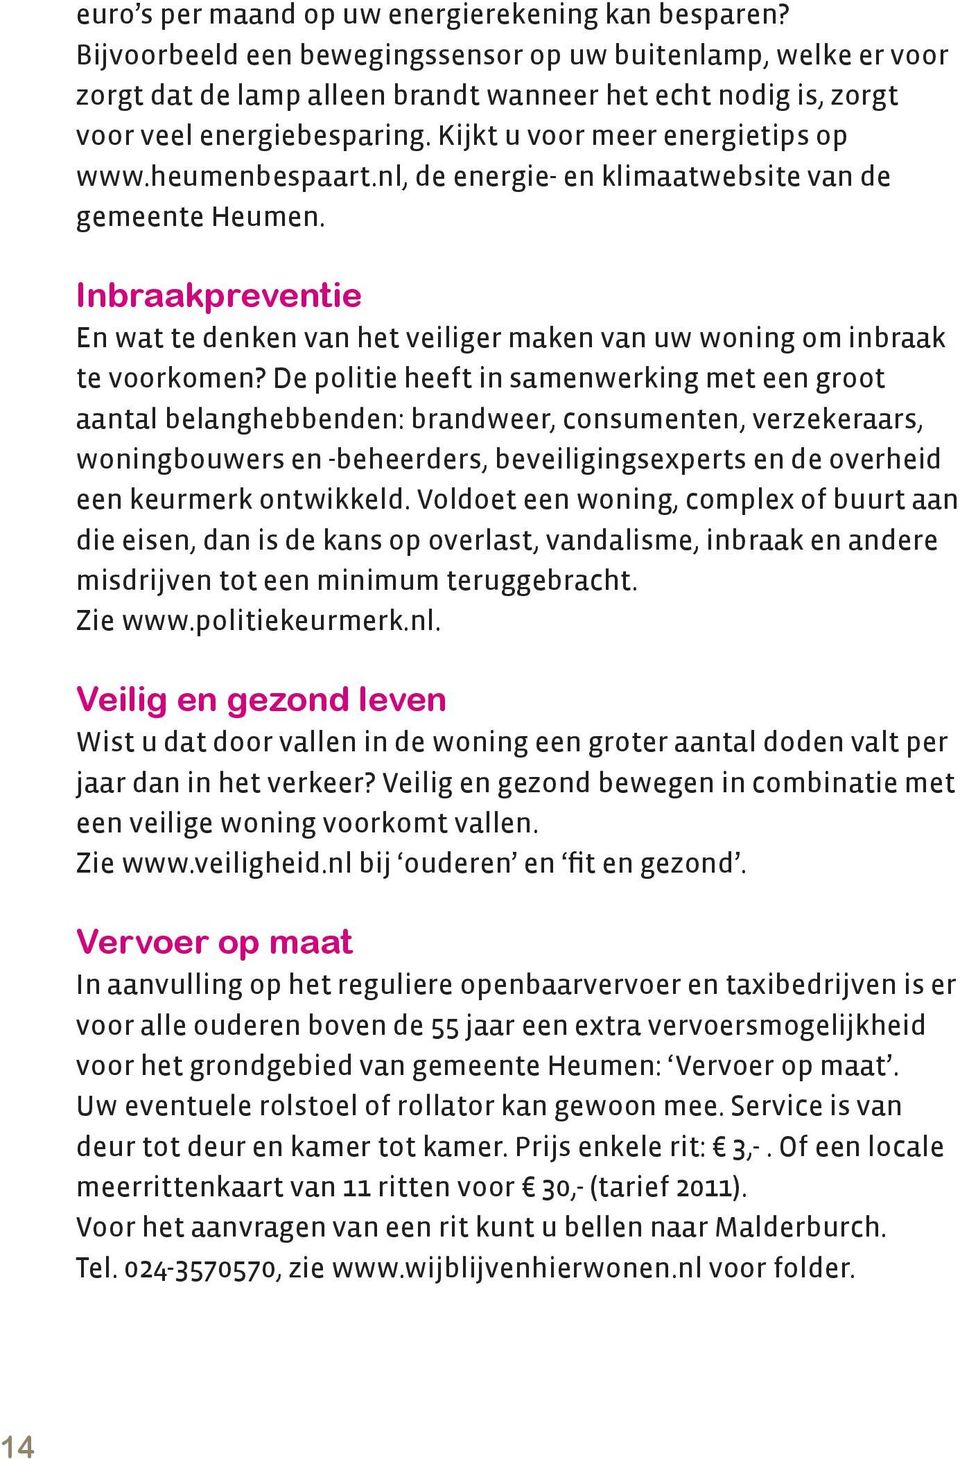 heumenbespaart.nl, de energie- en klimaatwebsite van de gemeente Heumen. Inbraakpreventie En wat te denken van het veiliger maken van uw woning om inbraak te voorkomen?